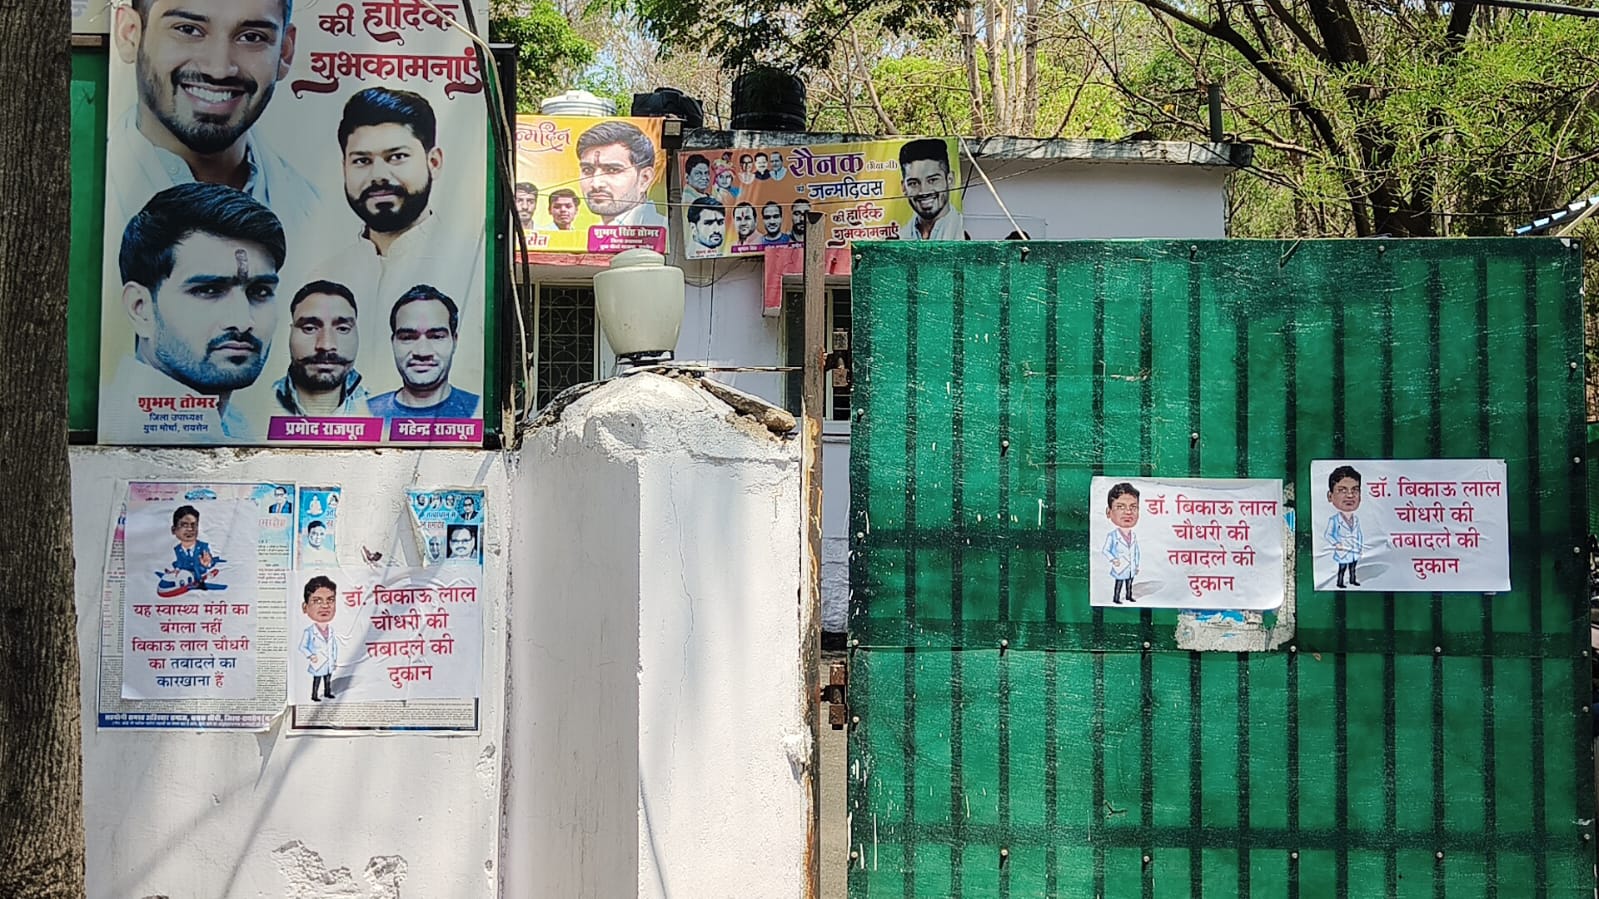 मध्य प्रदेश के स्वास्थ्य एवं परिवार कल्याण मंत्री के बंगले के बाहर लगा 'डाॅ बिकाऊ लाल चौधरी की तबादले की दुकान' के पोस्टर | New India Times